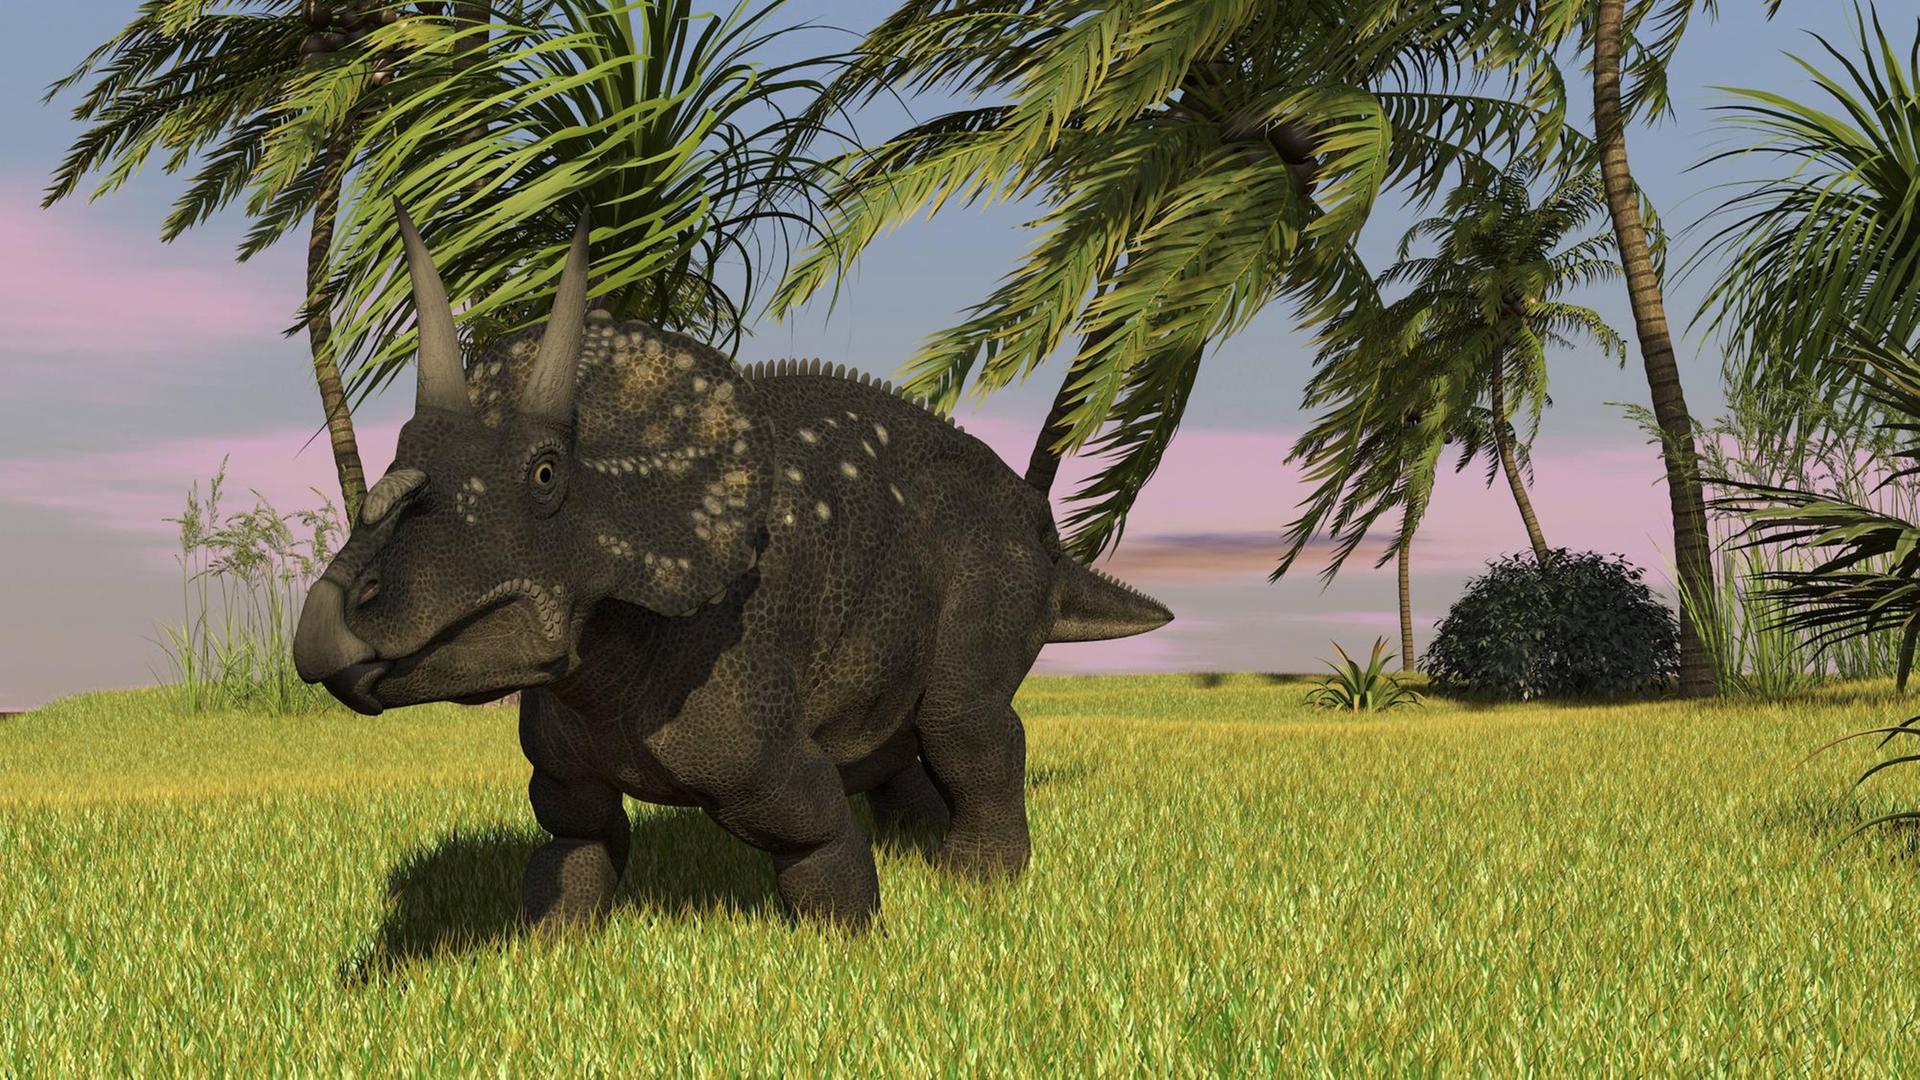 Künstlerische Darstellung eines Triceratops in einer tropischen Umgebung